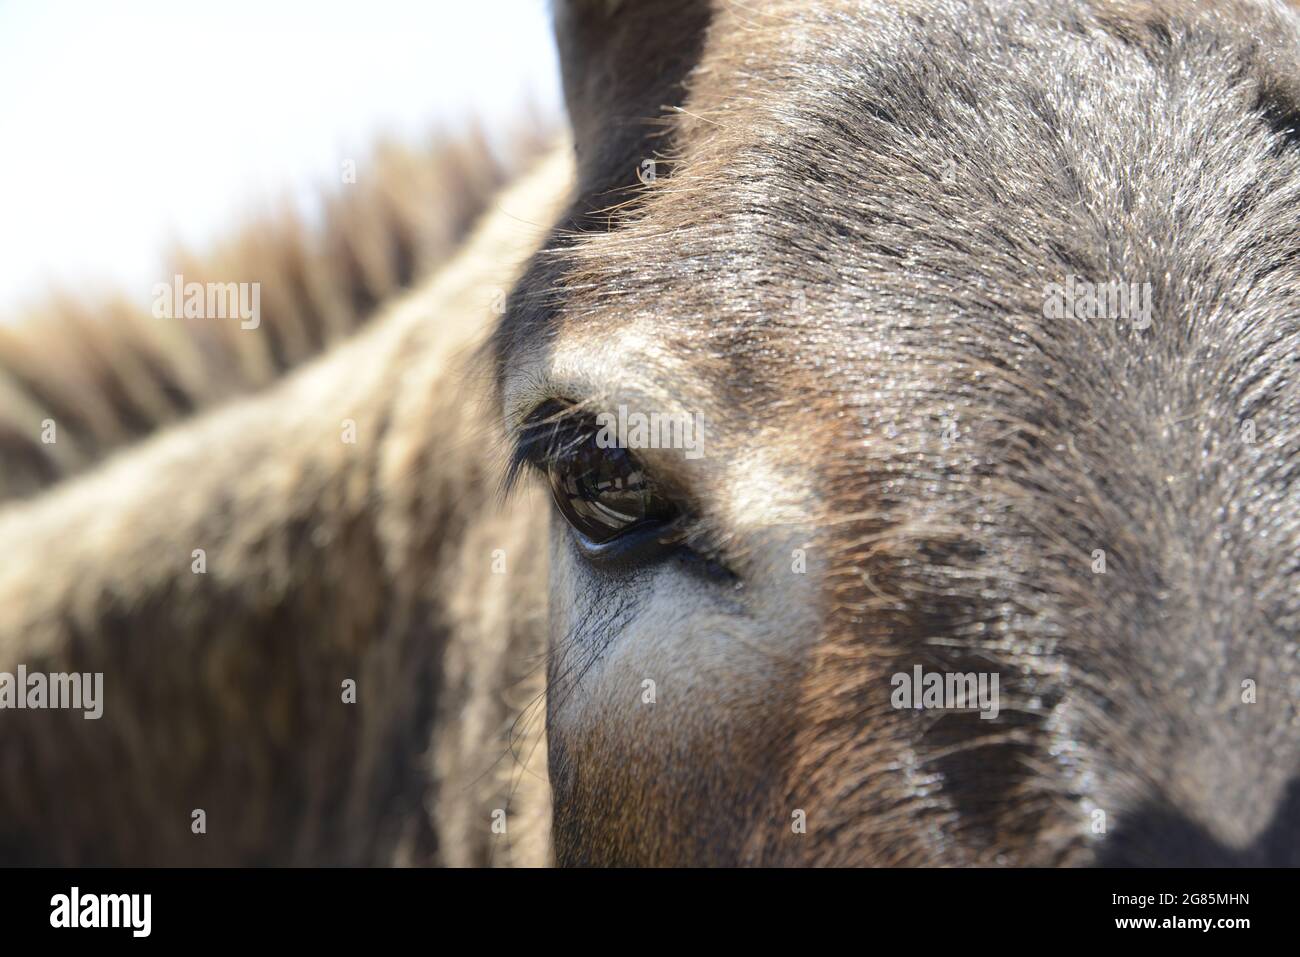 donkey eye Stock Photo